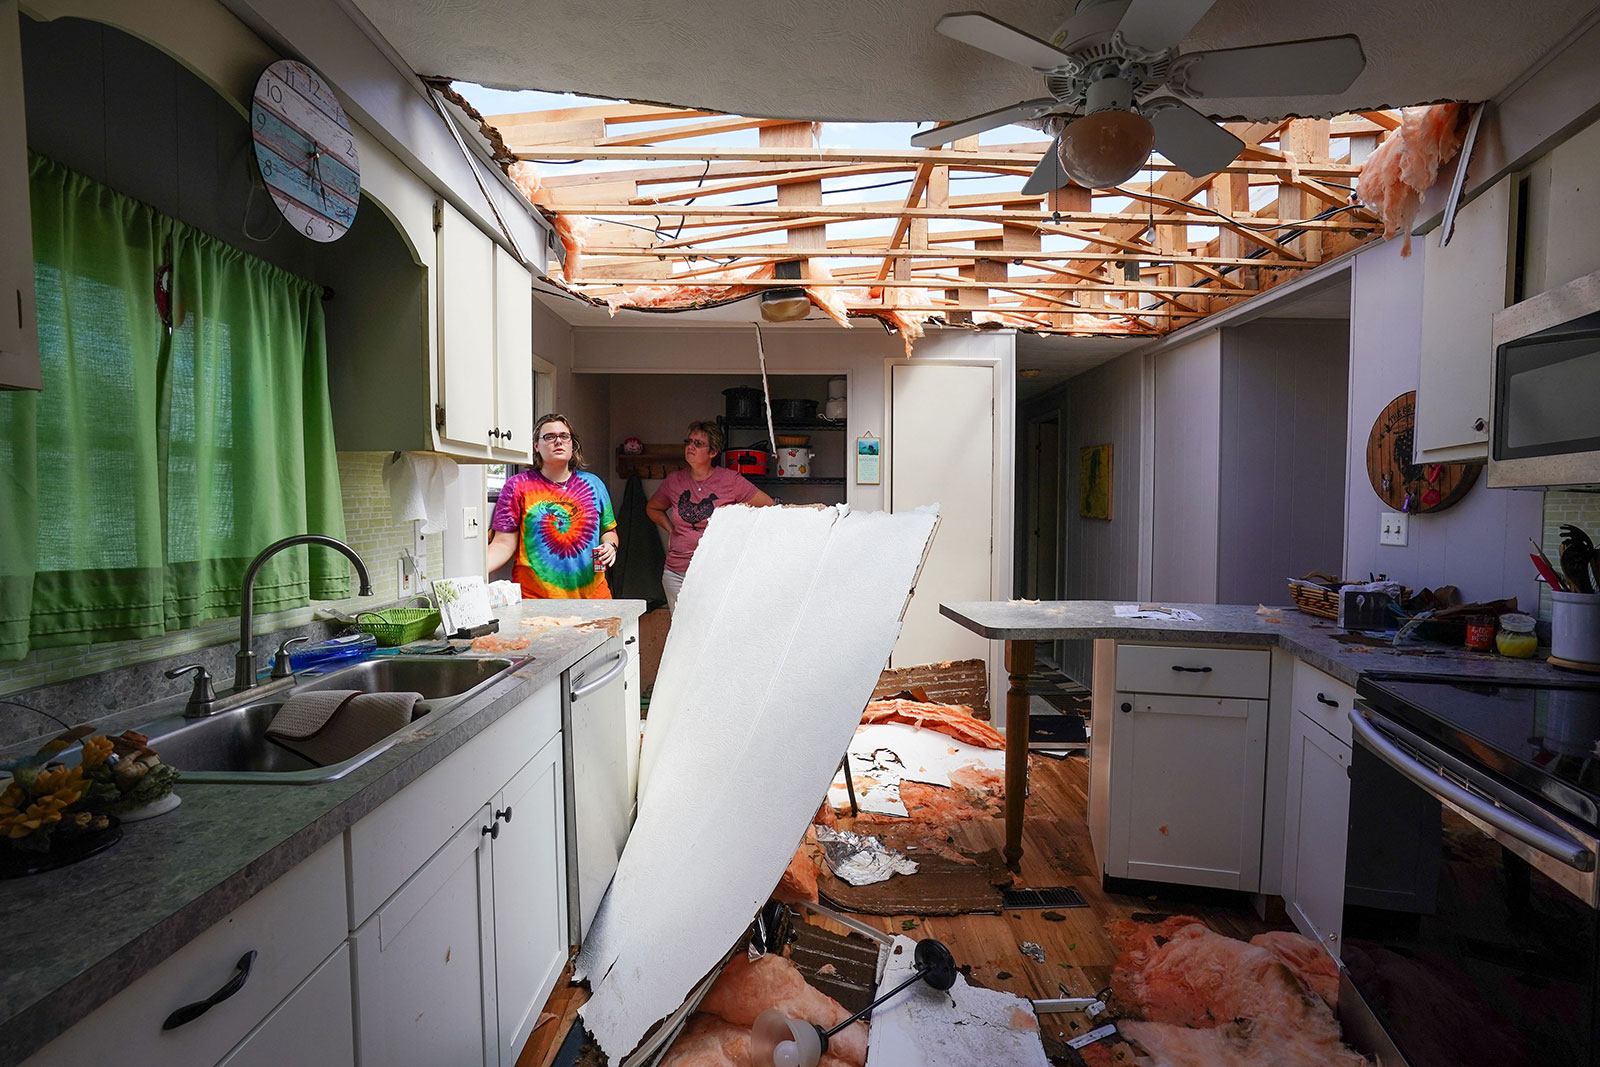  Andrea Barrios và con gái Hannah tại ngôi nhà bị tàn phá sau bão tại Cảng Charlotte (Nguồn ảnh: Bryan R. Smith / AFP / Getty Images)